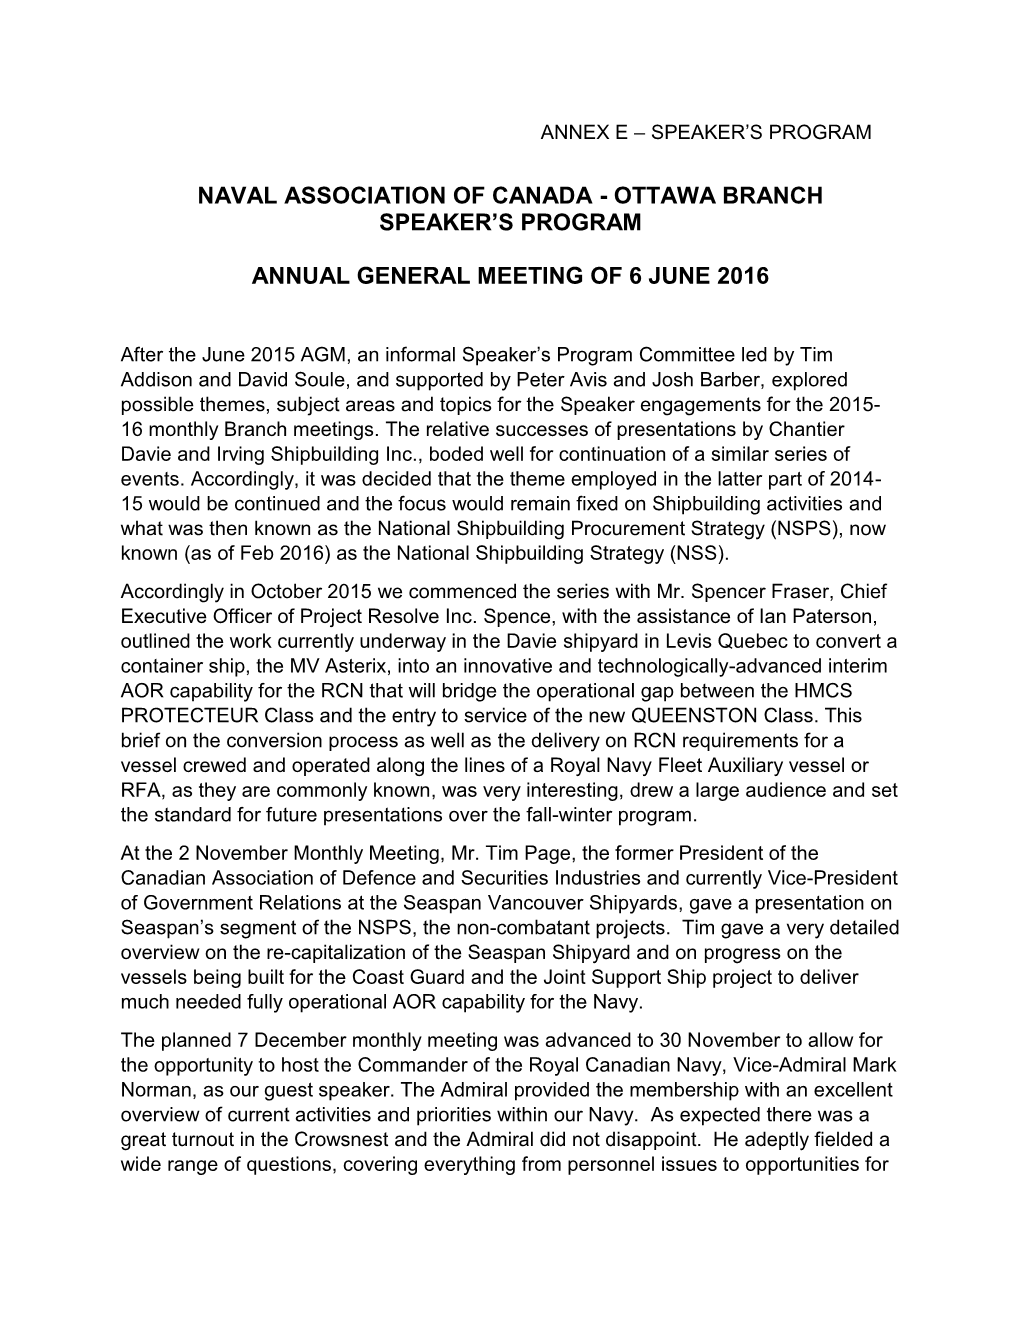 Ottawa Branch Speaker's Program Annual General Meeting of 6 June